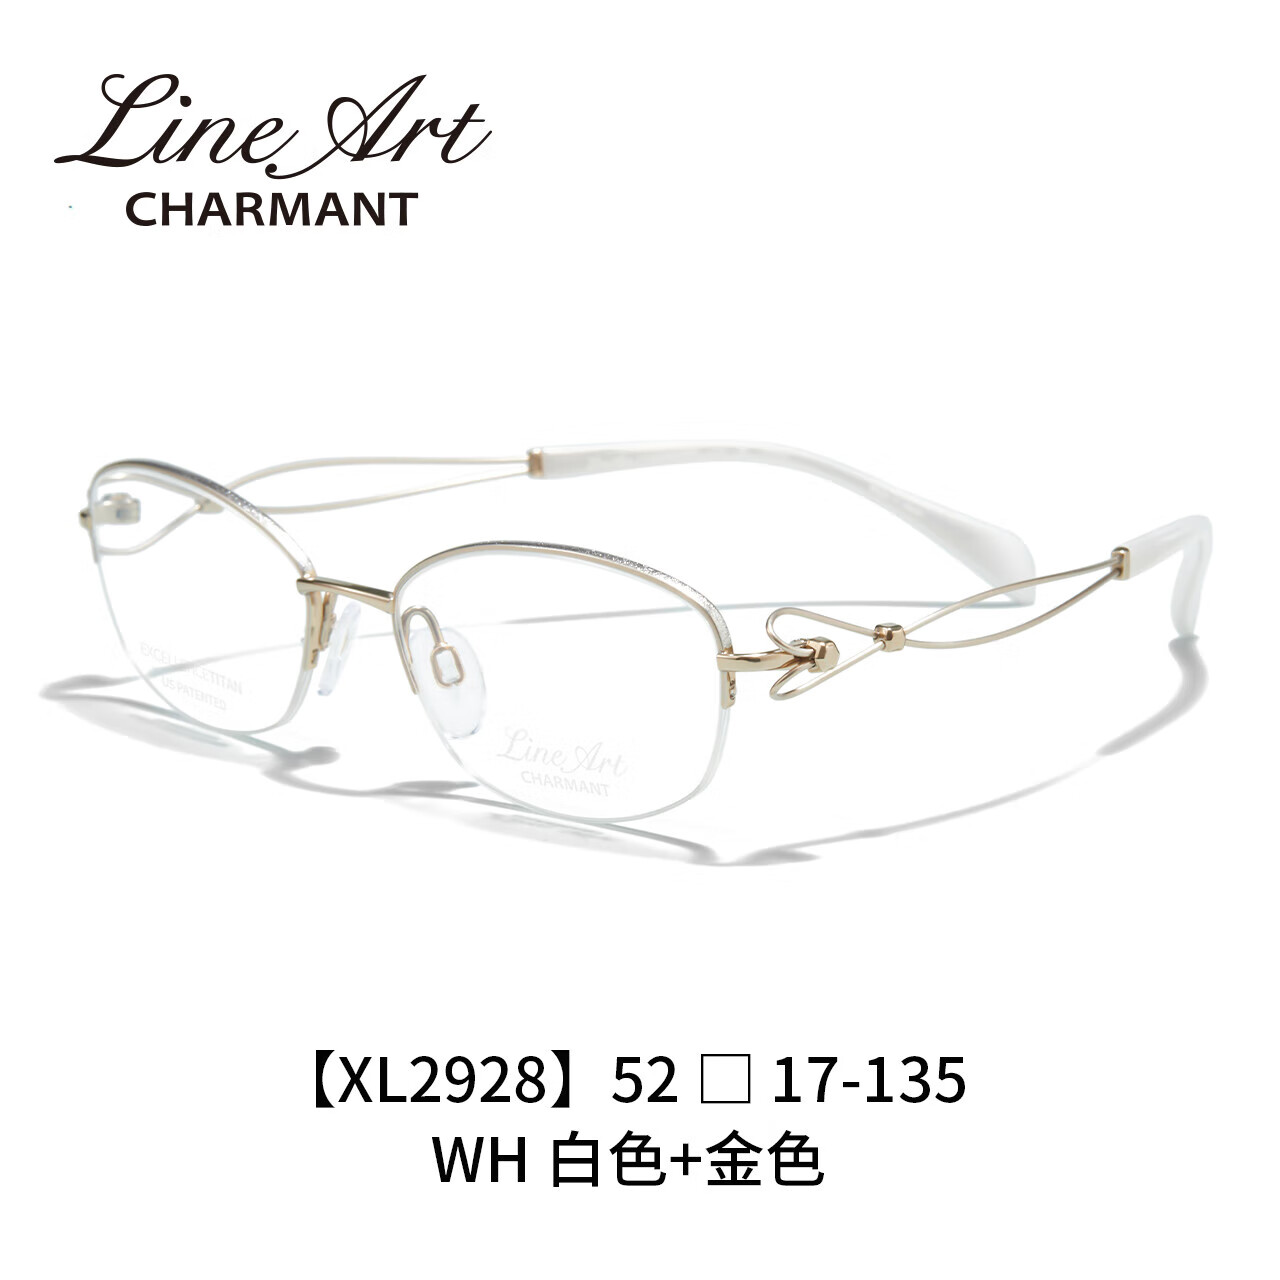 夏蒙（Charmant）线钛系列眼镜女士钛合金XL2928 WH 单镜框 WH-白色+金色